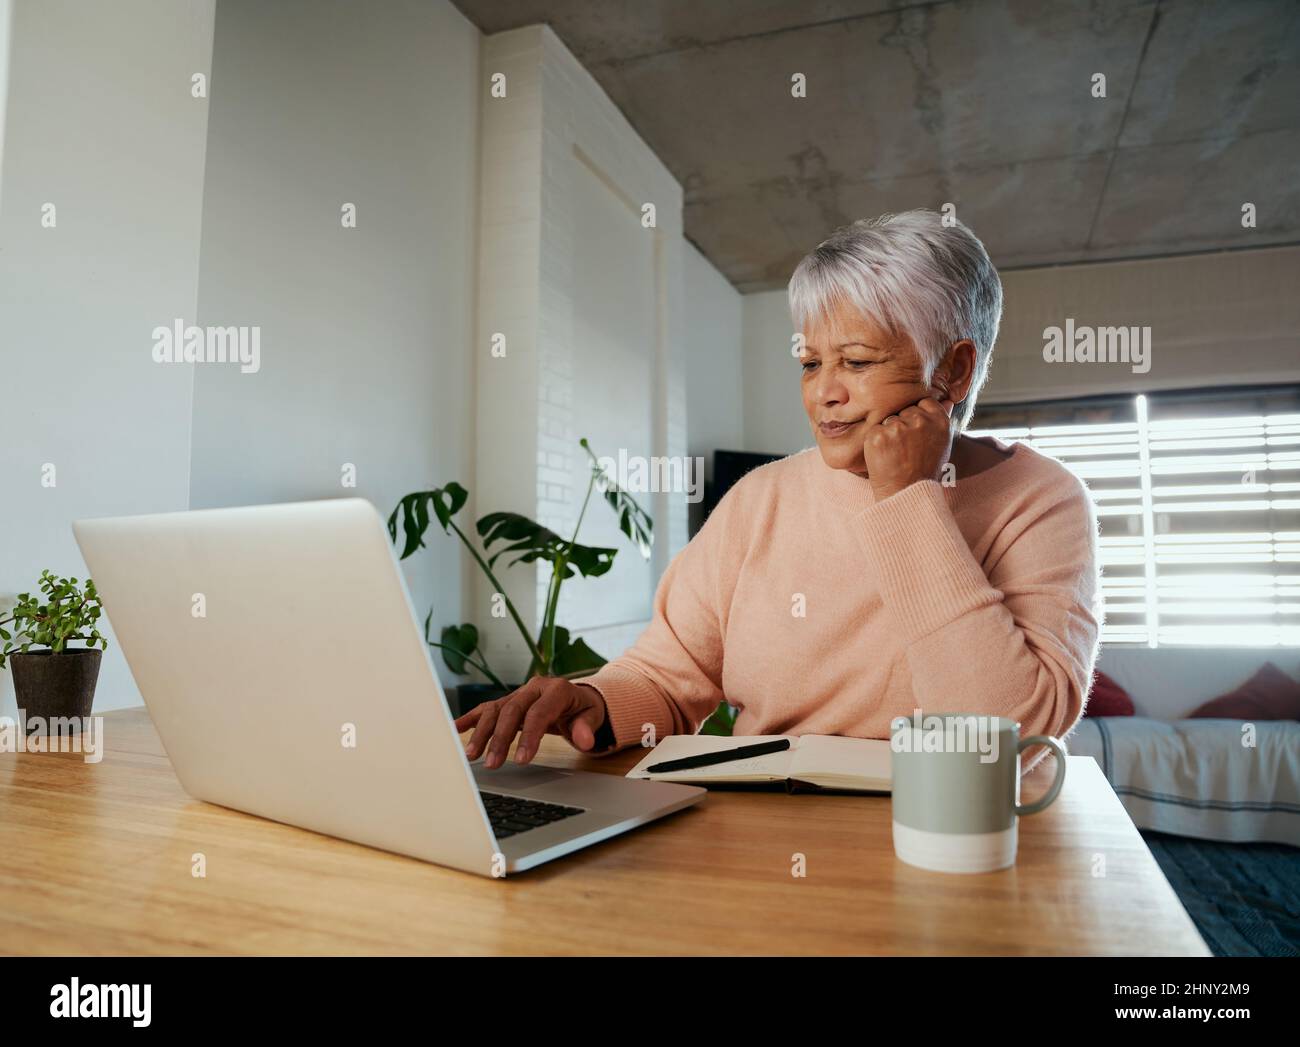 Une femme âgée, multi-ethnique, est préoccupée par le défilement d'Internet sur son ordinateur portable. Assis au comptoir de cuisine à la maison. Banque D'Images